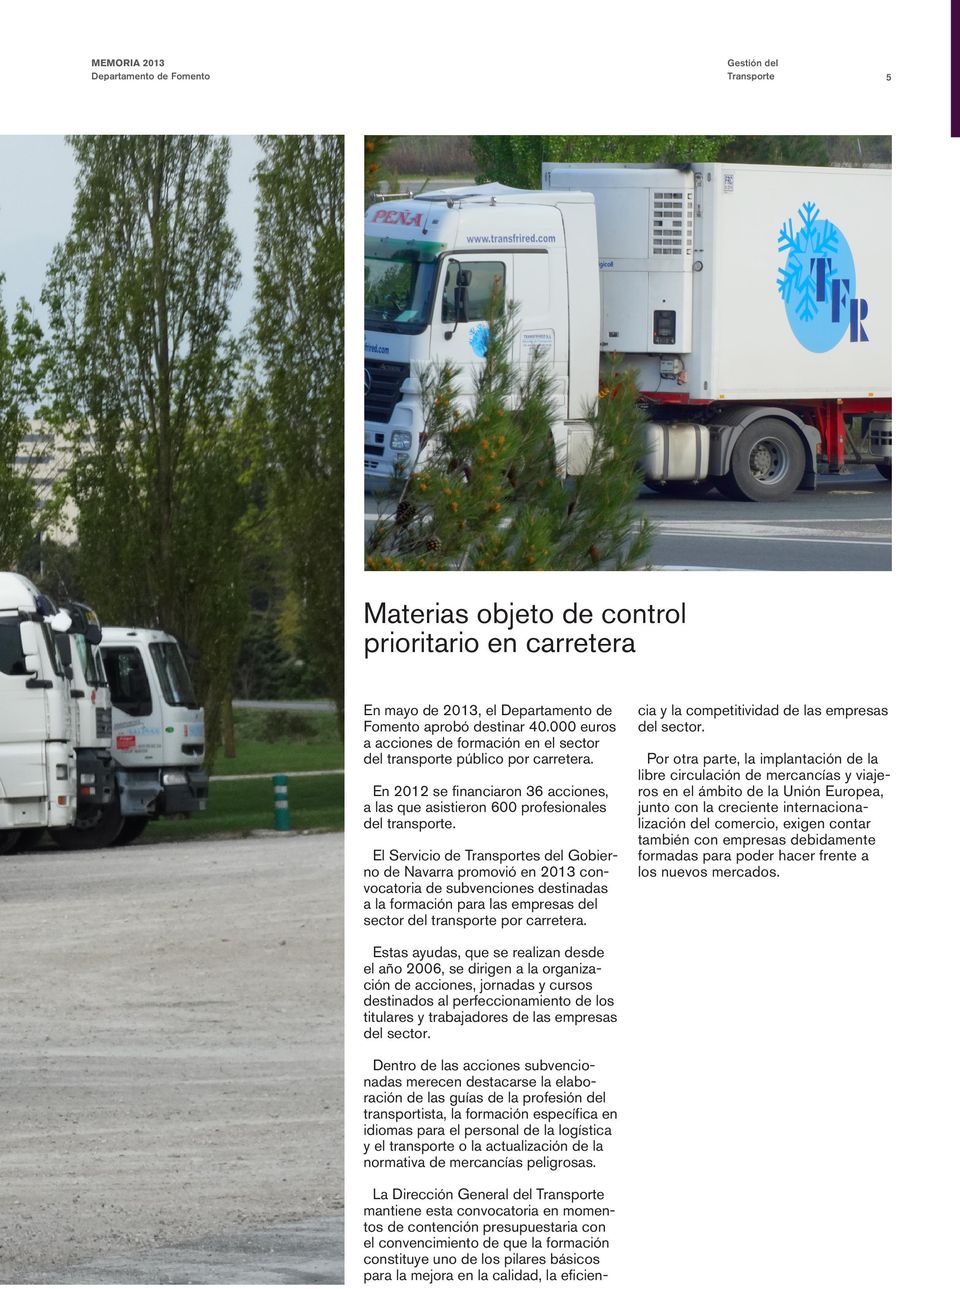 El Servicio de Transportes del Gobierno de Navarra promovió en 2013 convocatoria de subvenciones destinadas a la formación para las empresas del sector del transporte por carretera.